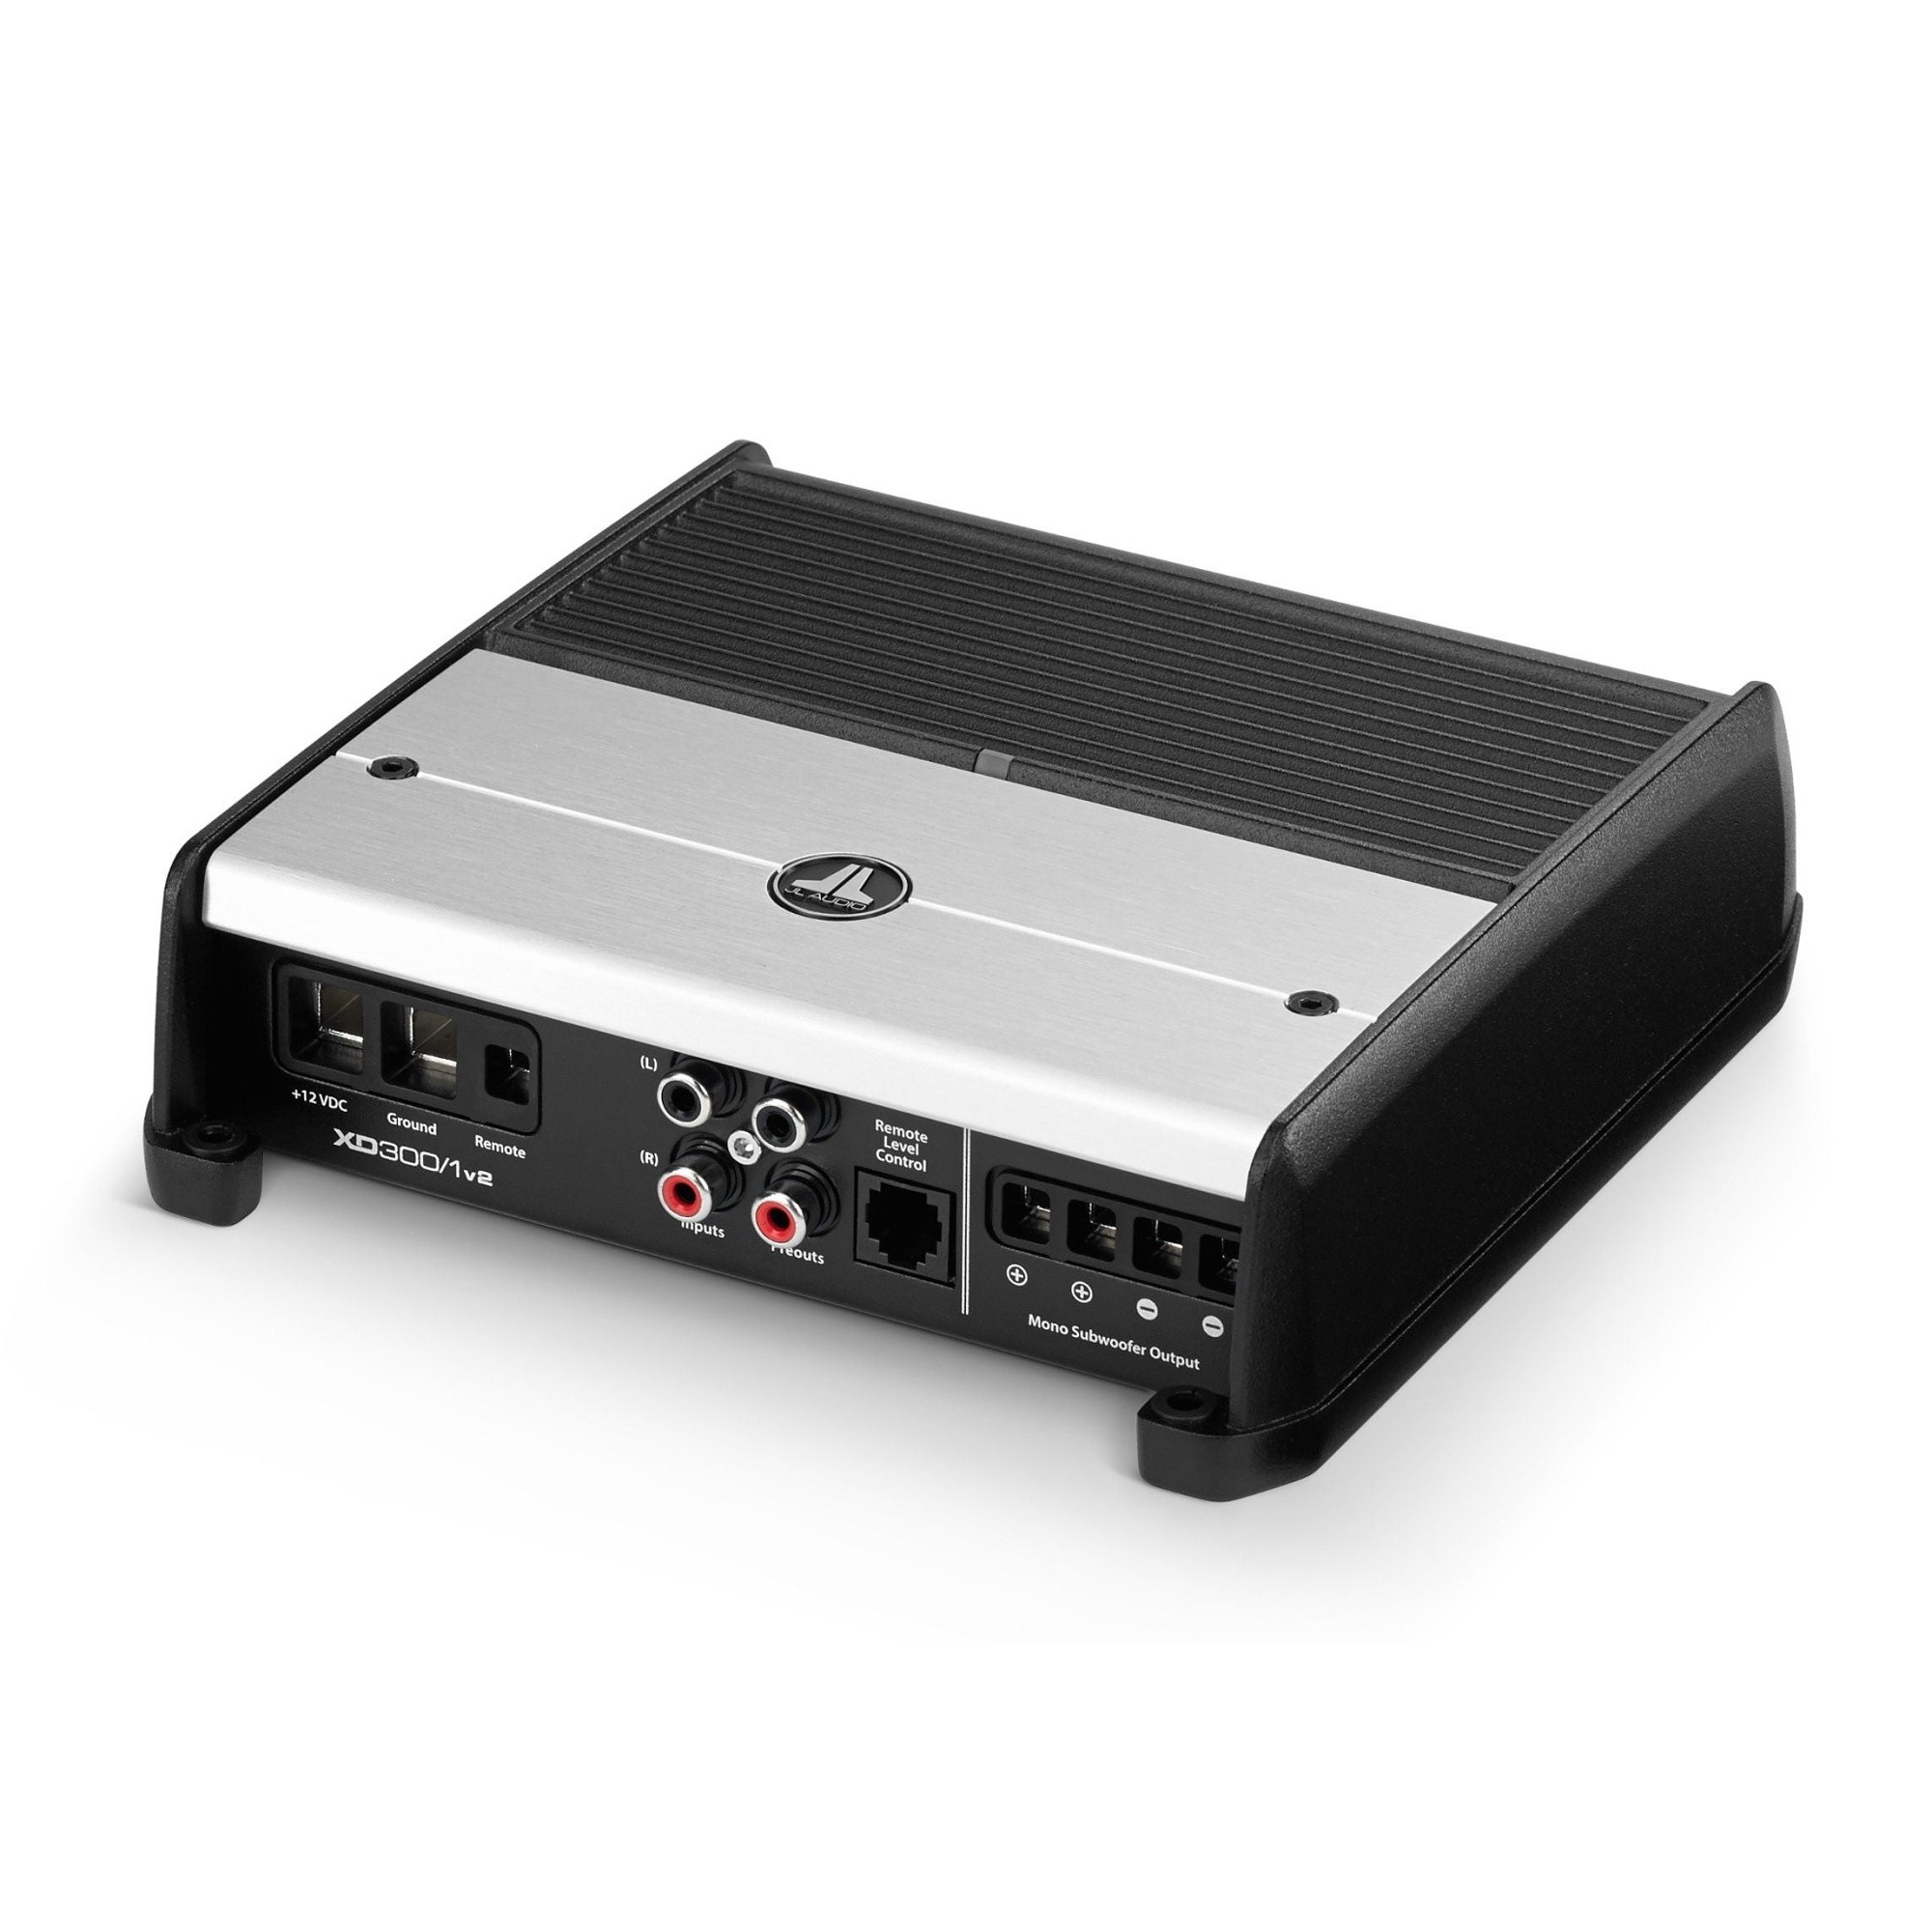 Zesilovač JL Audio XD300/1v2